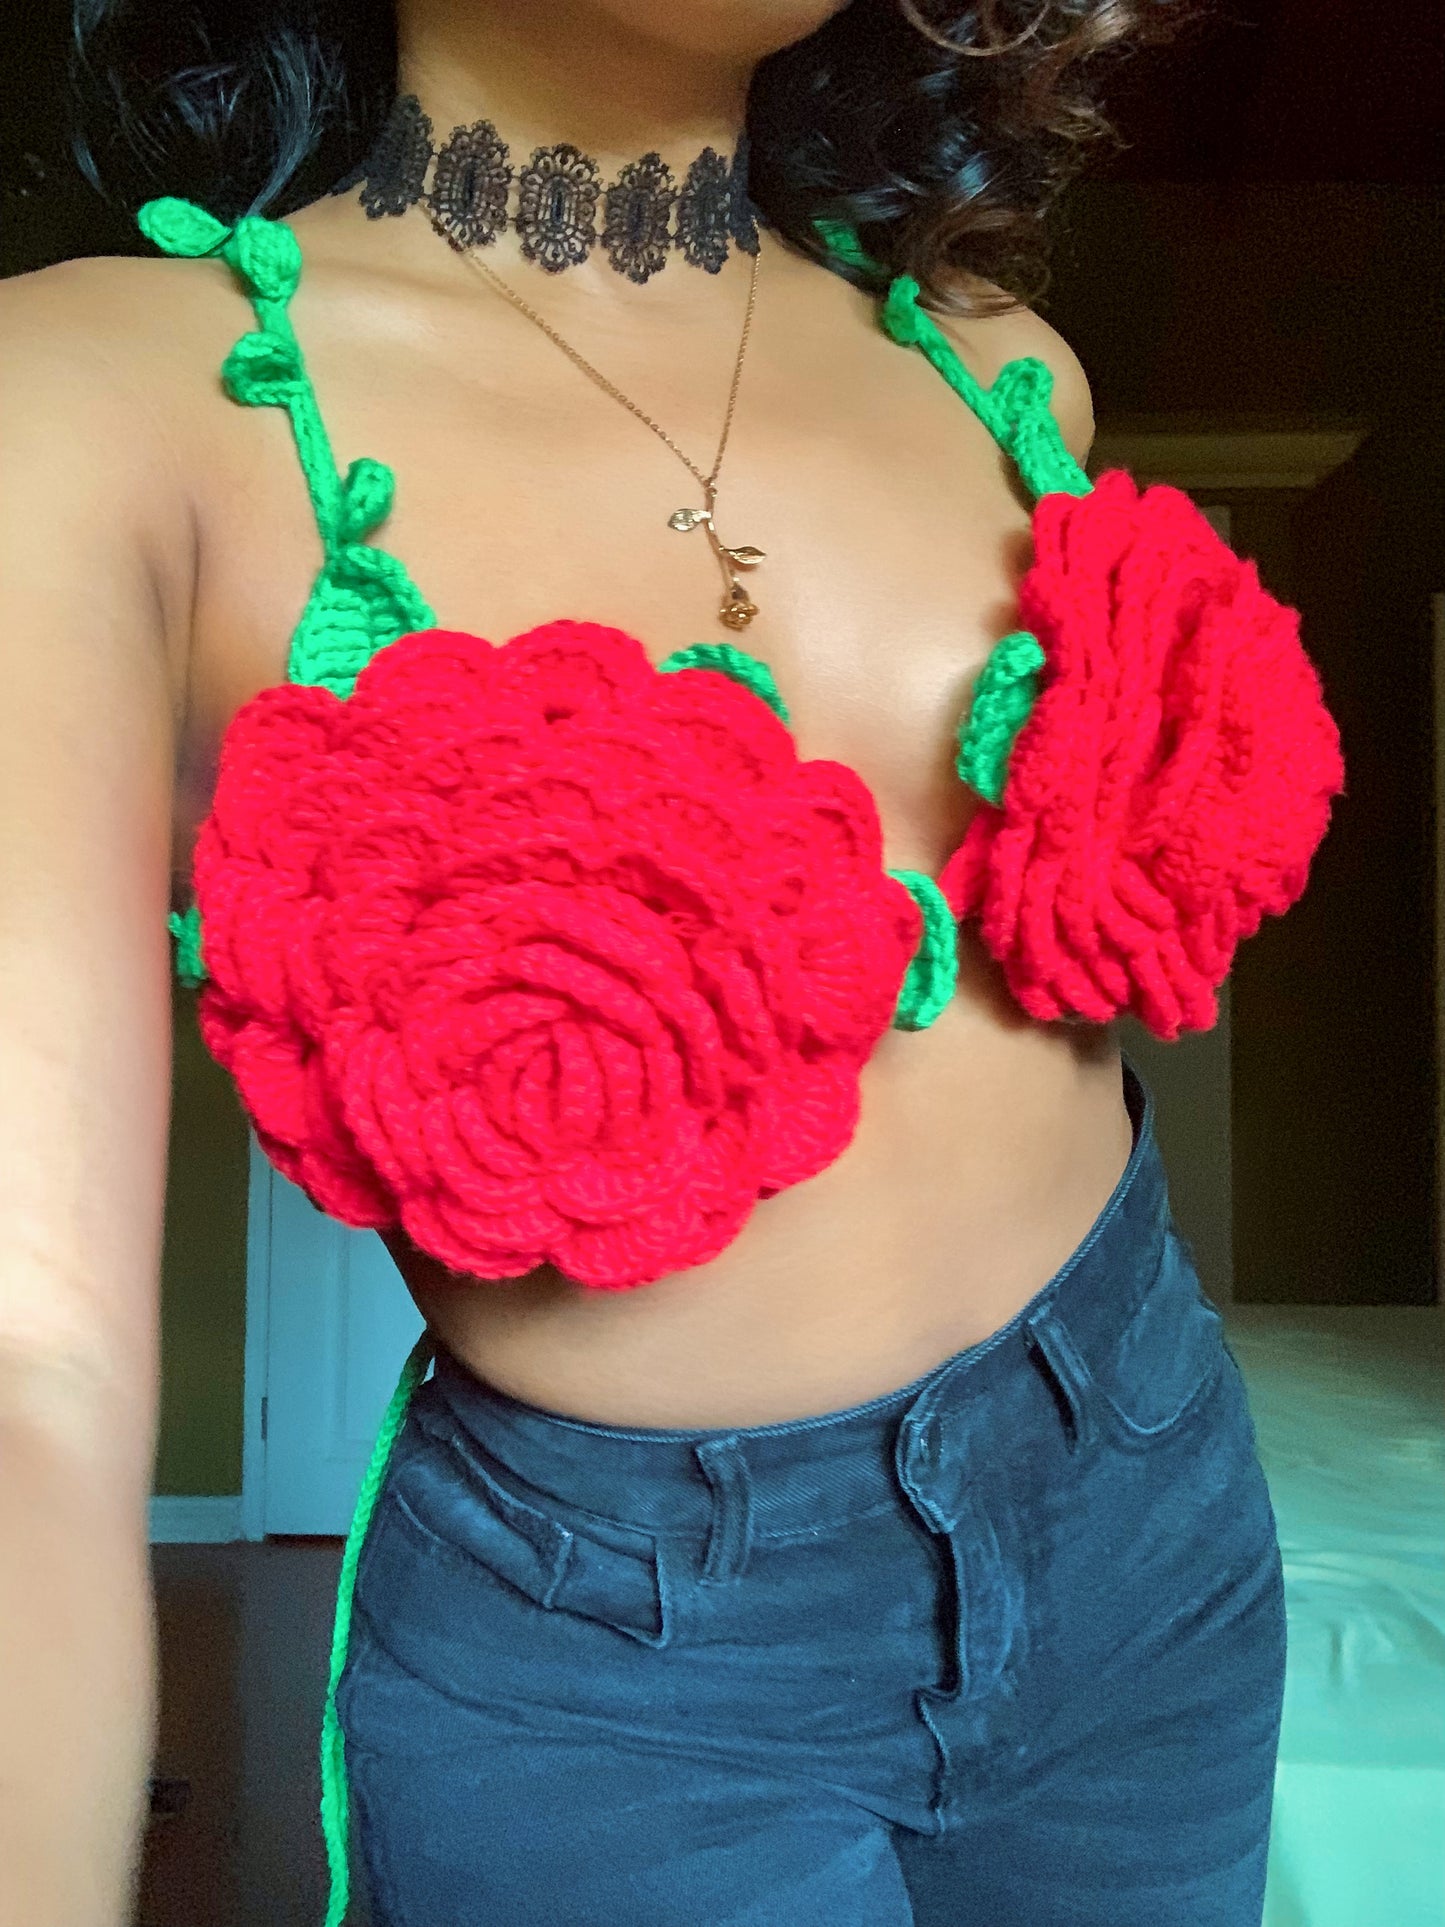 Rose Crochet Bralette